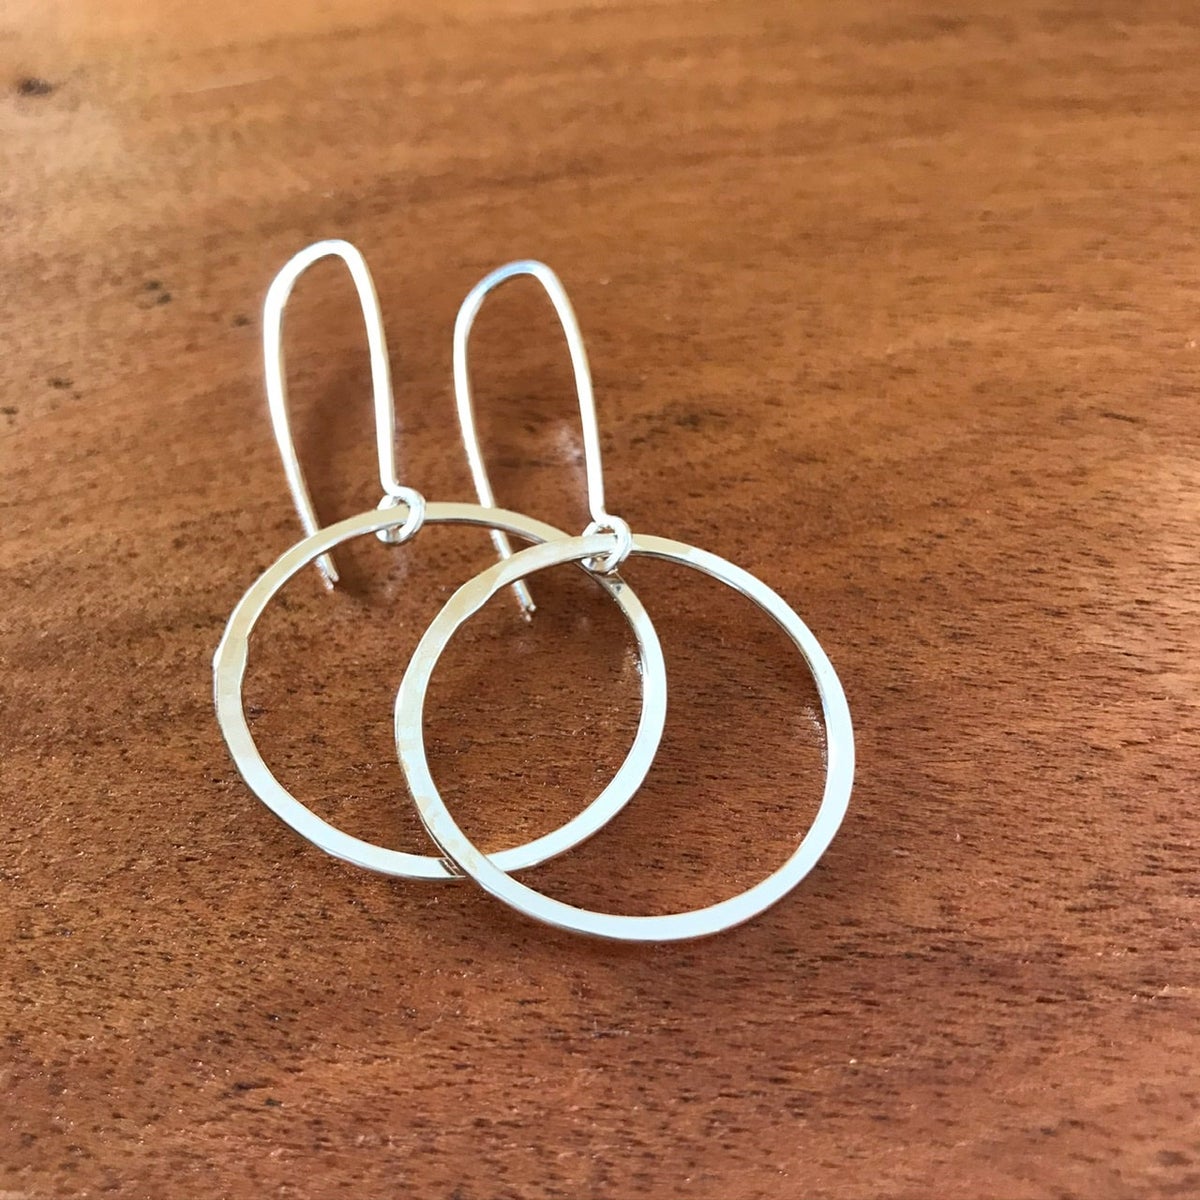 Medium Circle Earrings in Sterling Silver